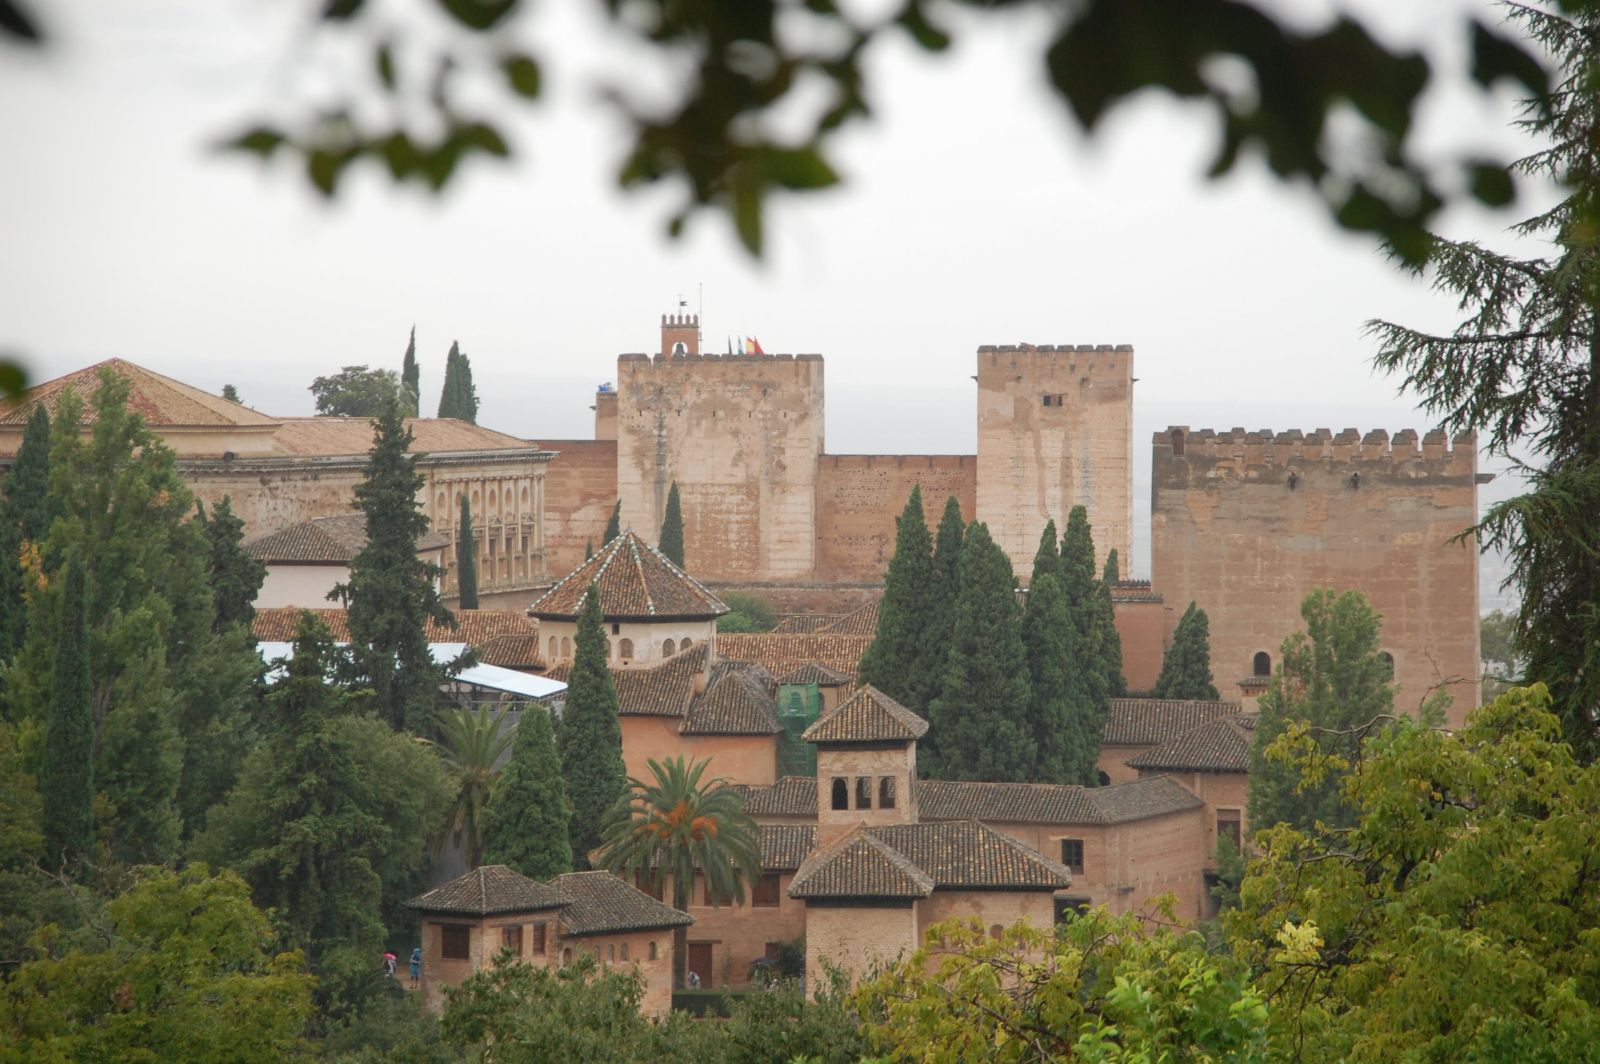 Alhambra Museum lädt zur Ausstellung